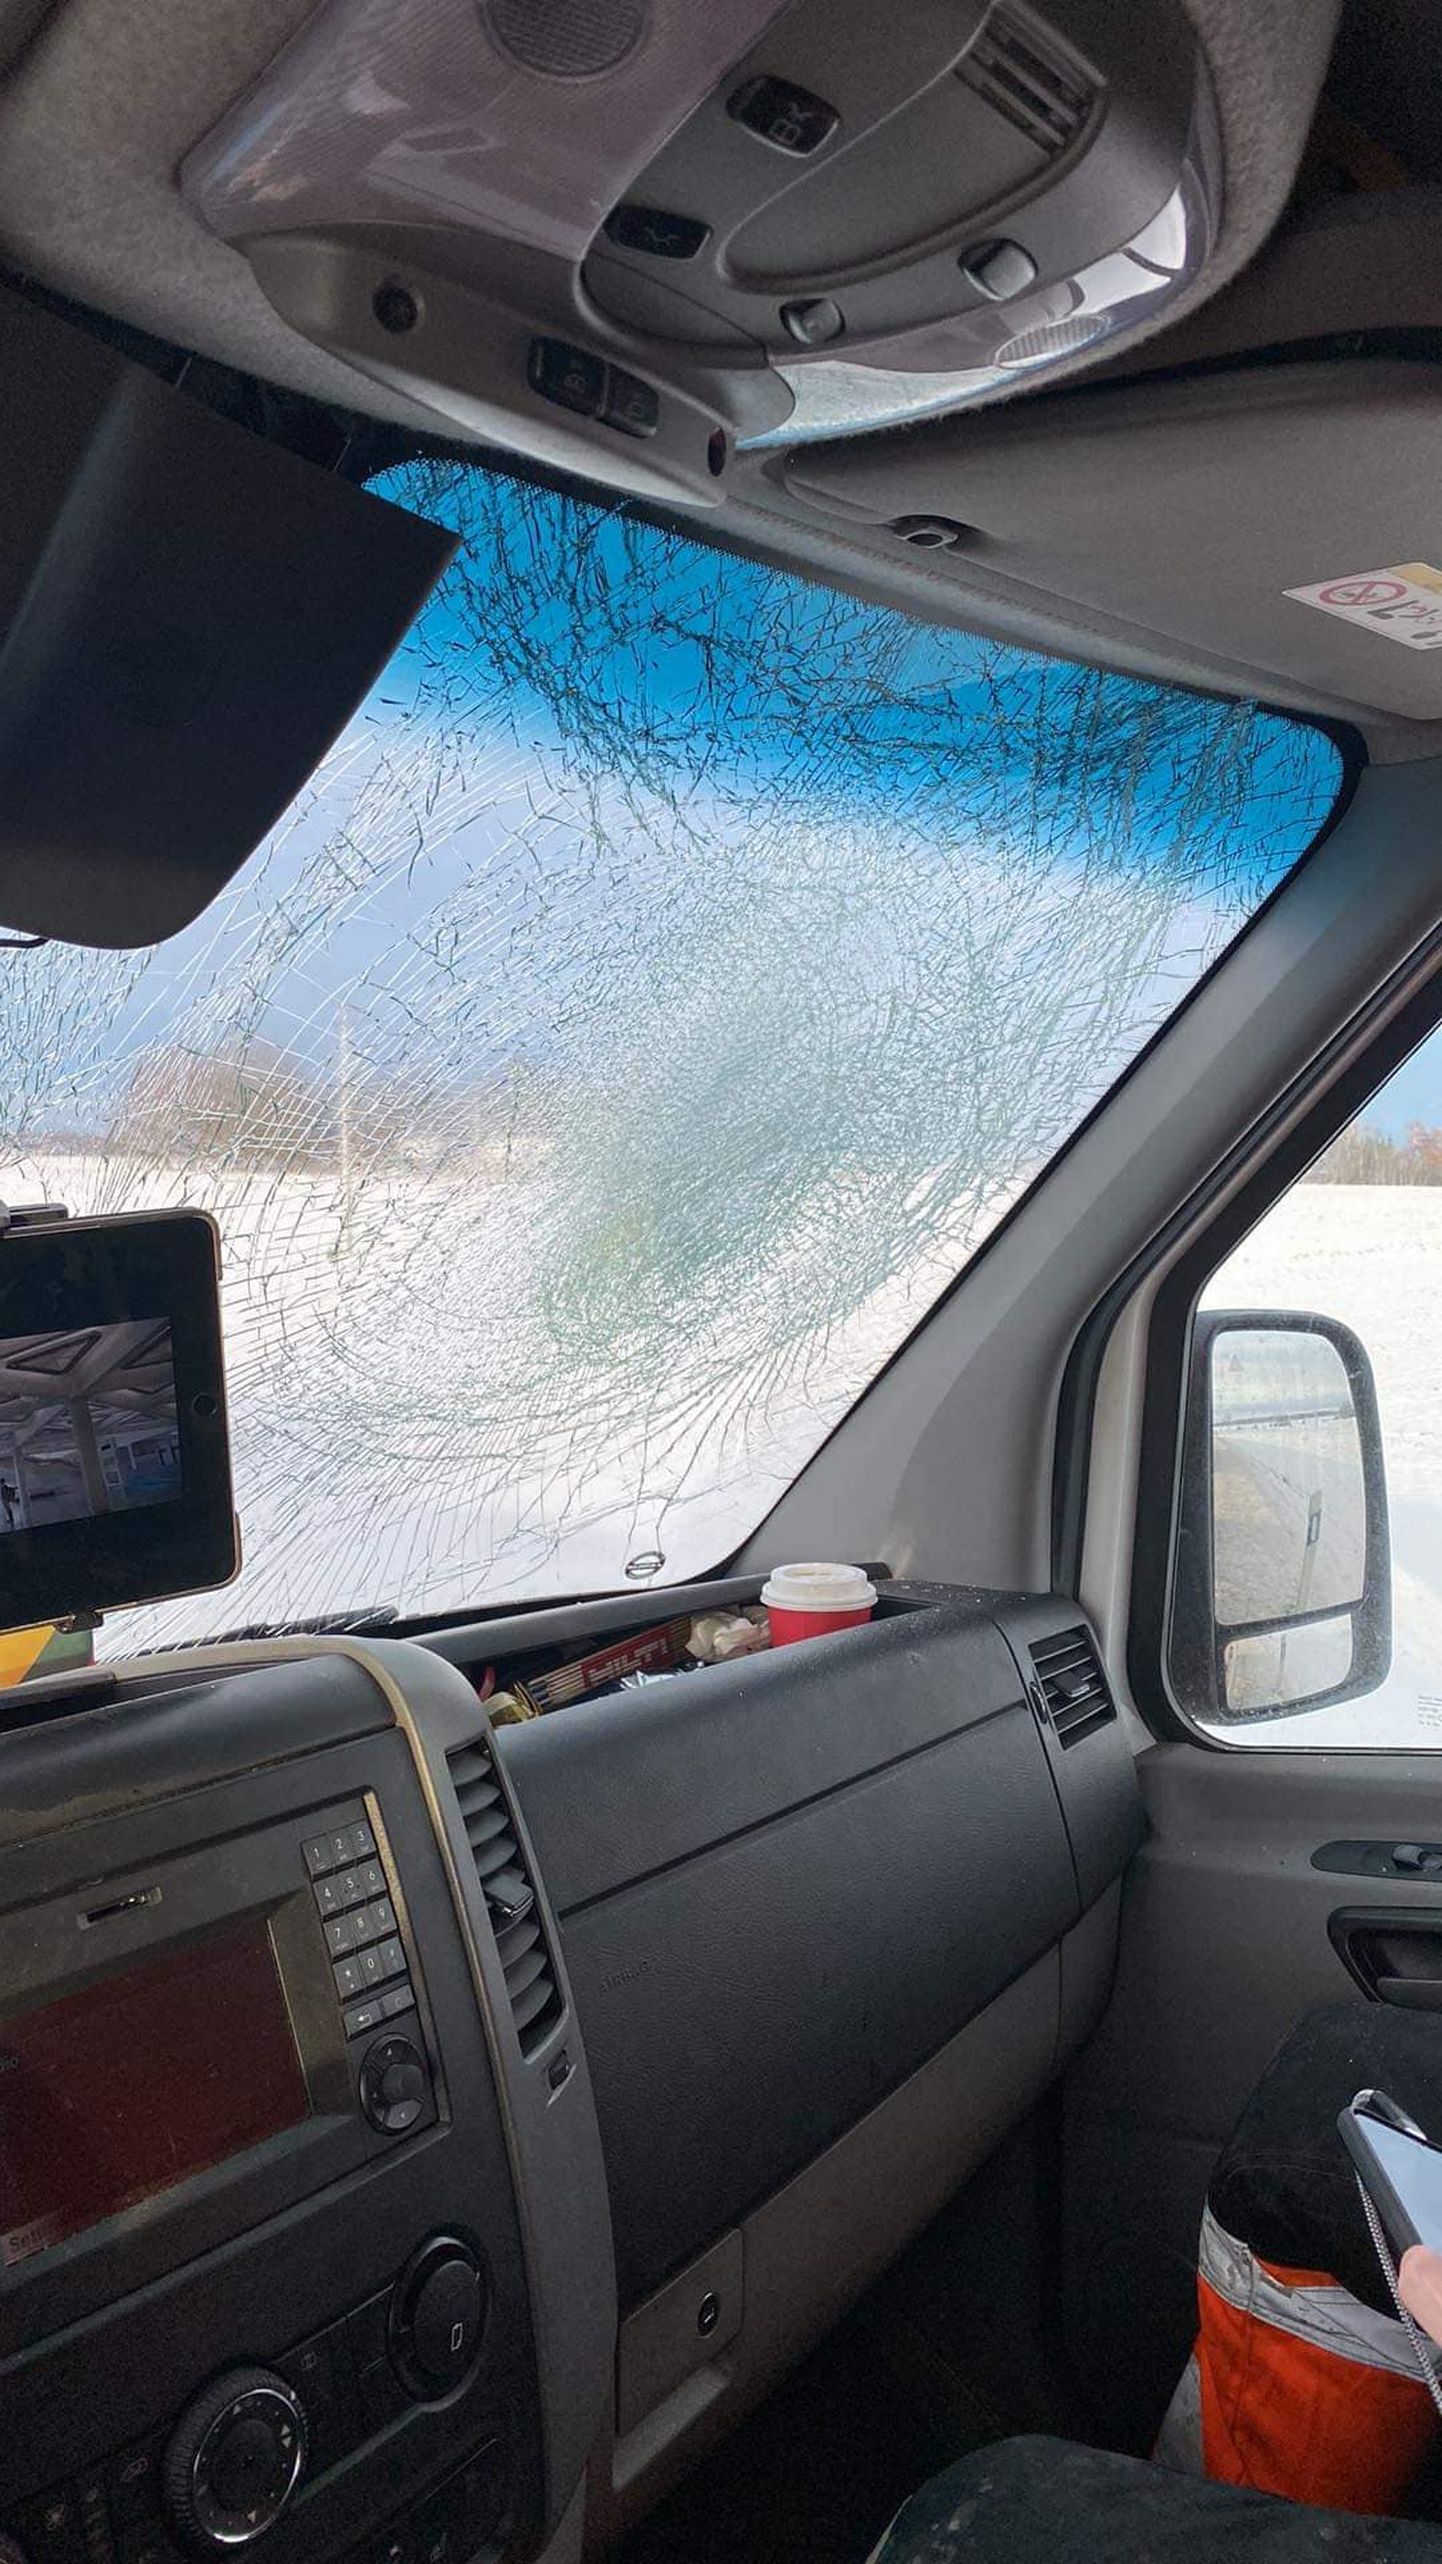 Слетевшая с крыши встречного грузовика глыба льда разбила лобовое стекло.